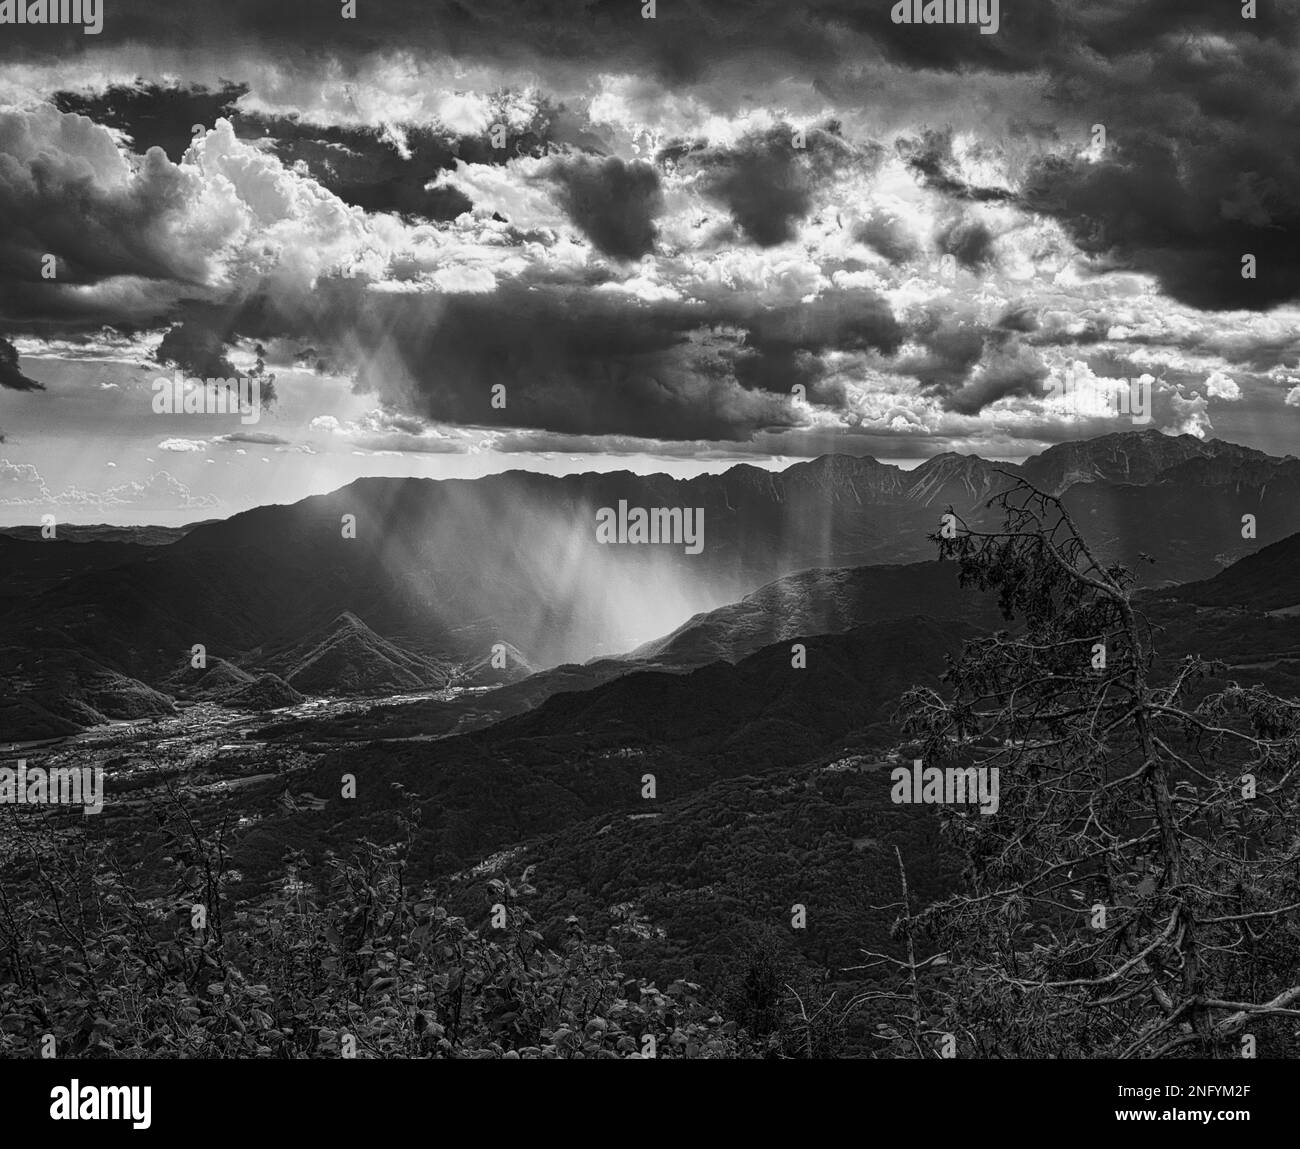 Ein großer Blickwinkel auf die Landschaft in Schwarz-Weiß. Stockfoto